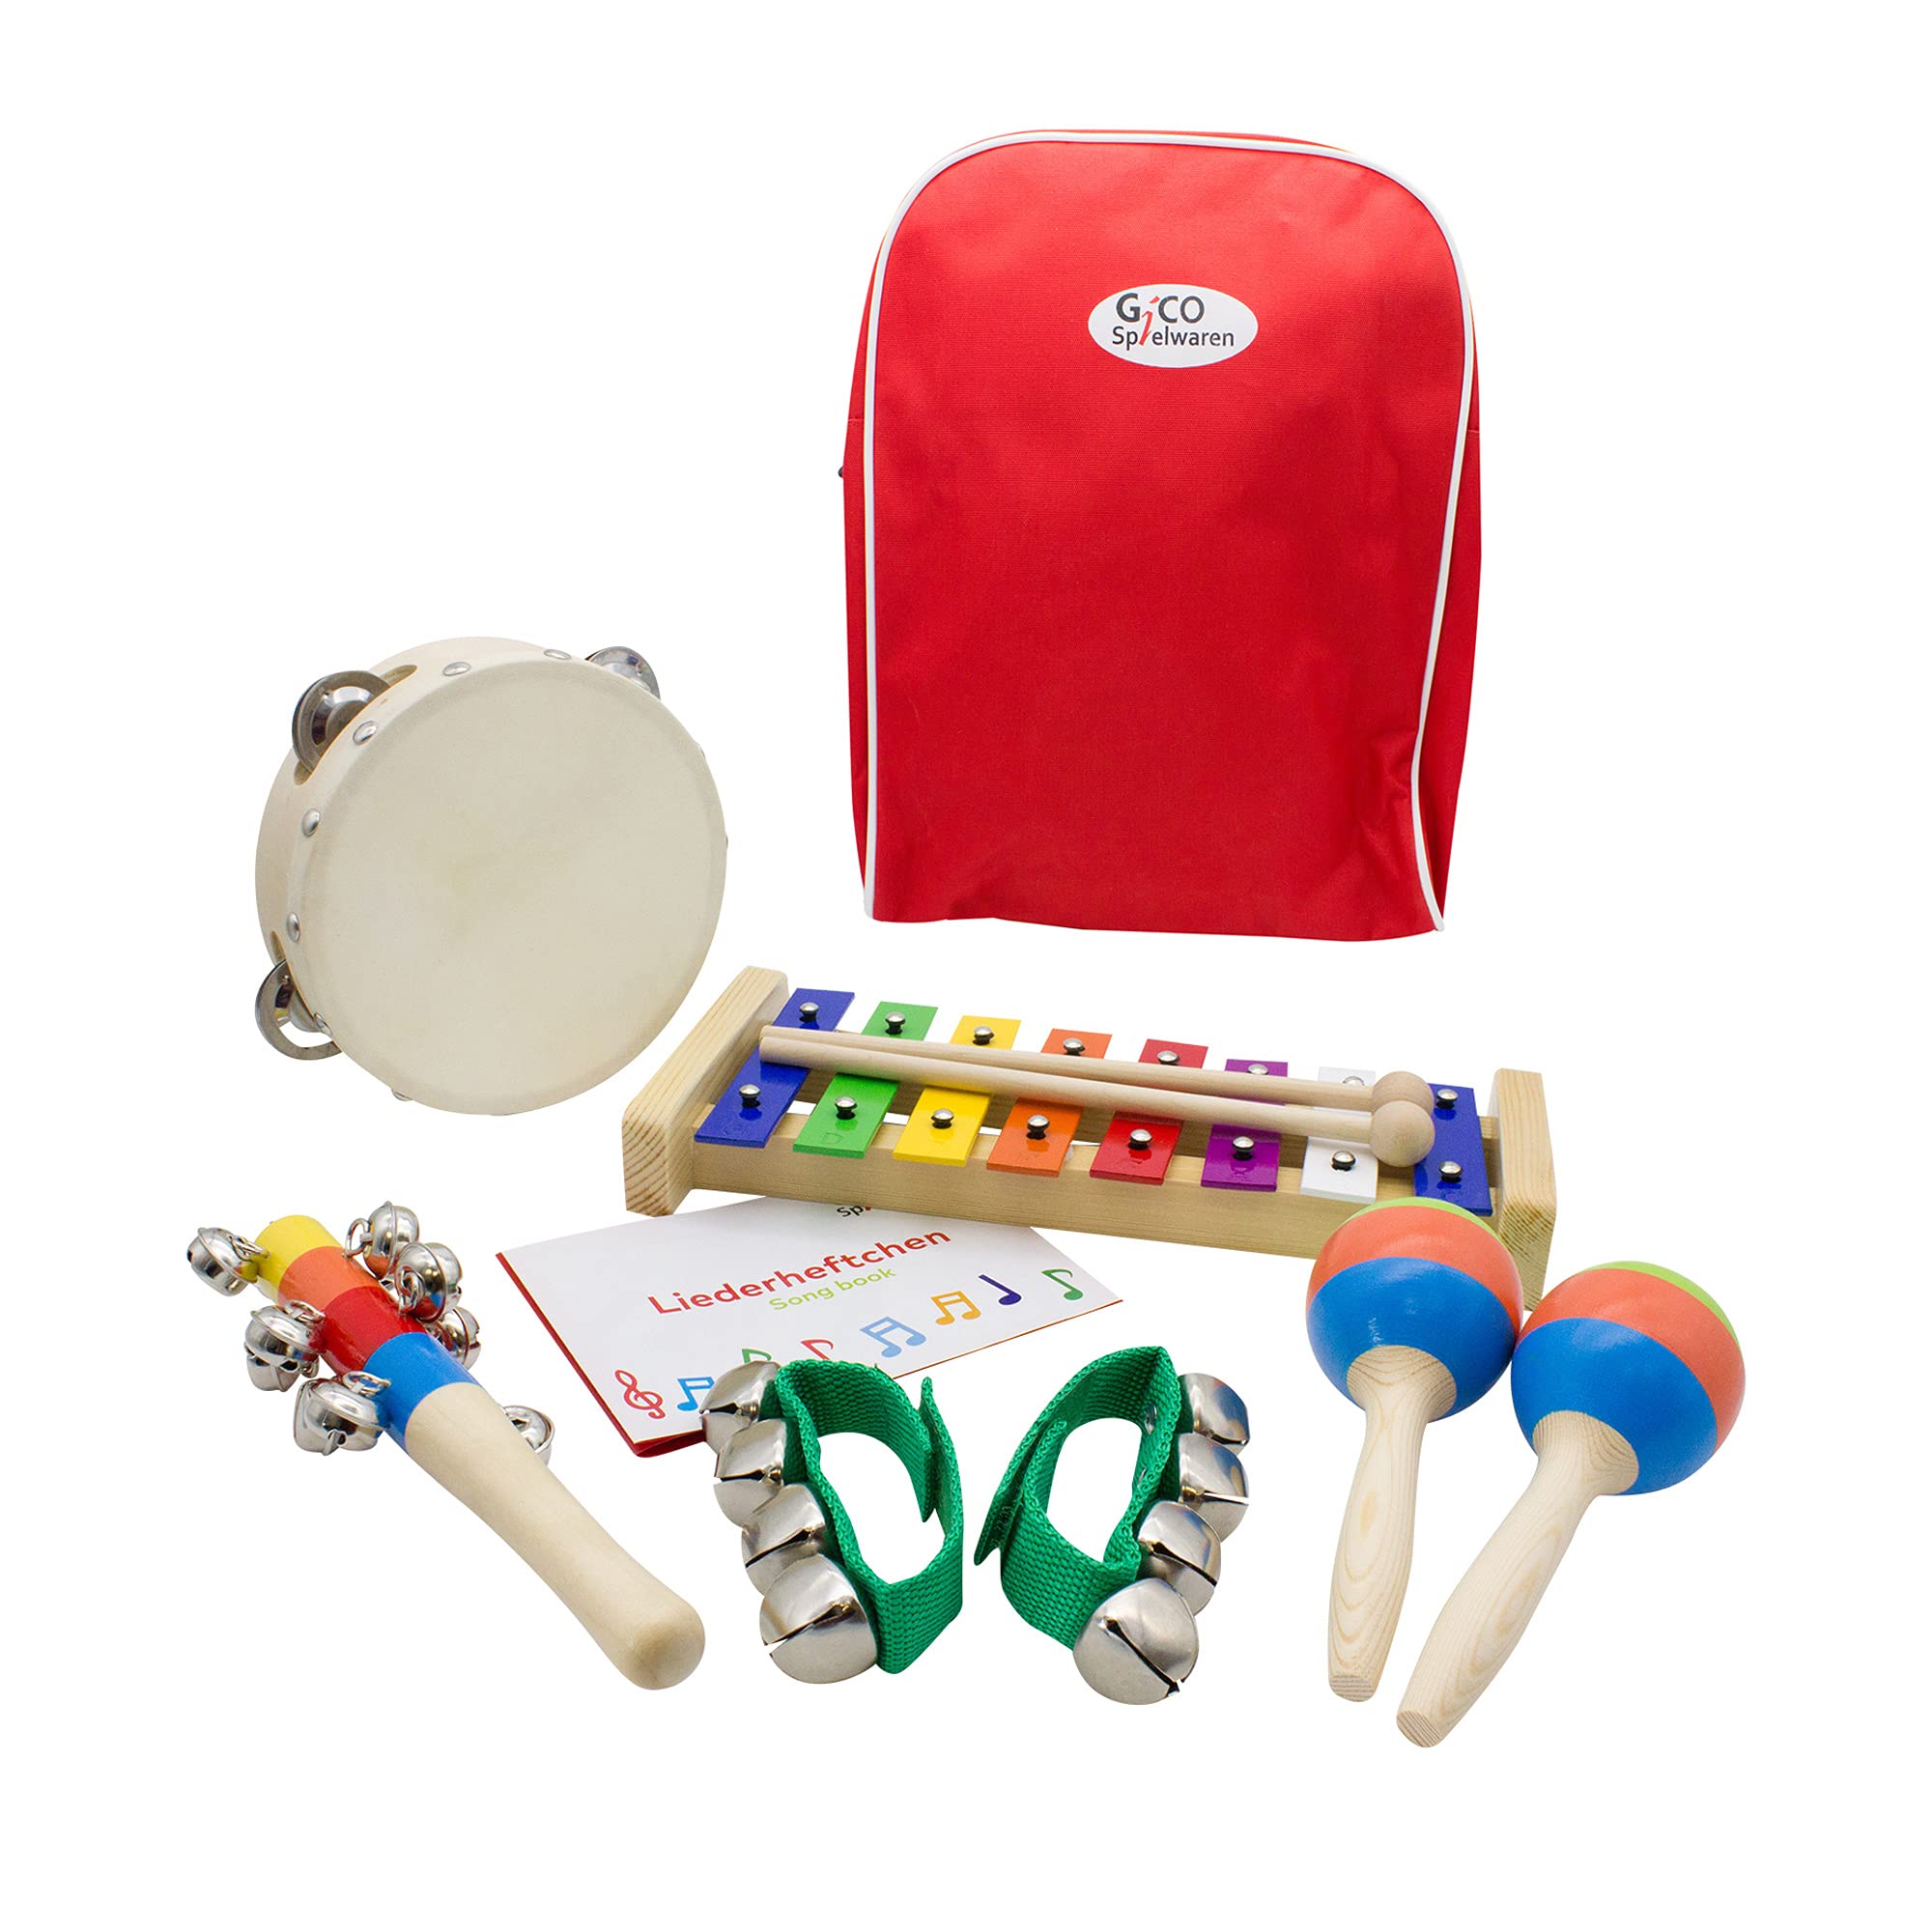 Musikinstrumente für Kinder, Musik im Rucksack: mit Holzspielzeug, Xylophon, Rhythmus Spielzeug für Mädchen und Jungen Holzspielzeug - 3878 (Rot)